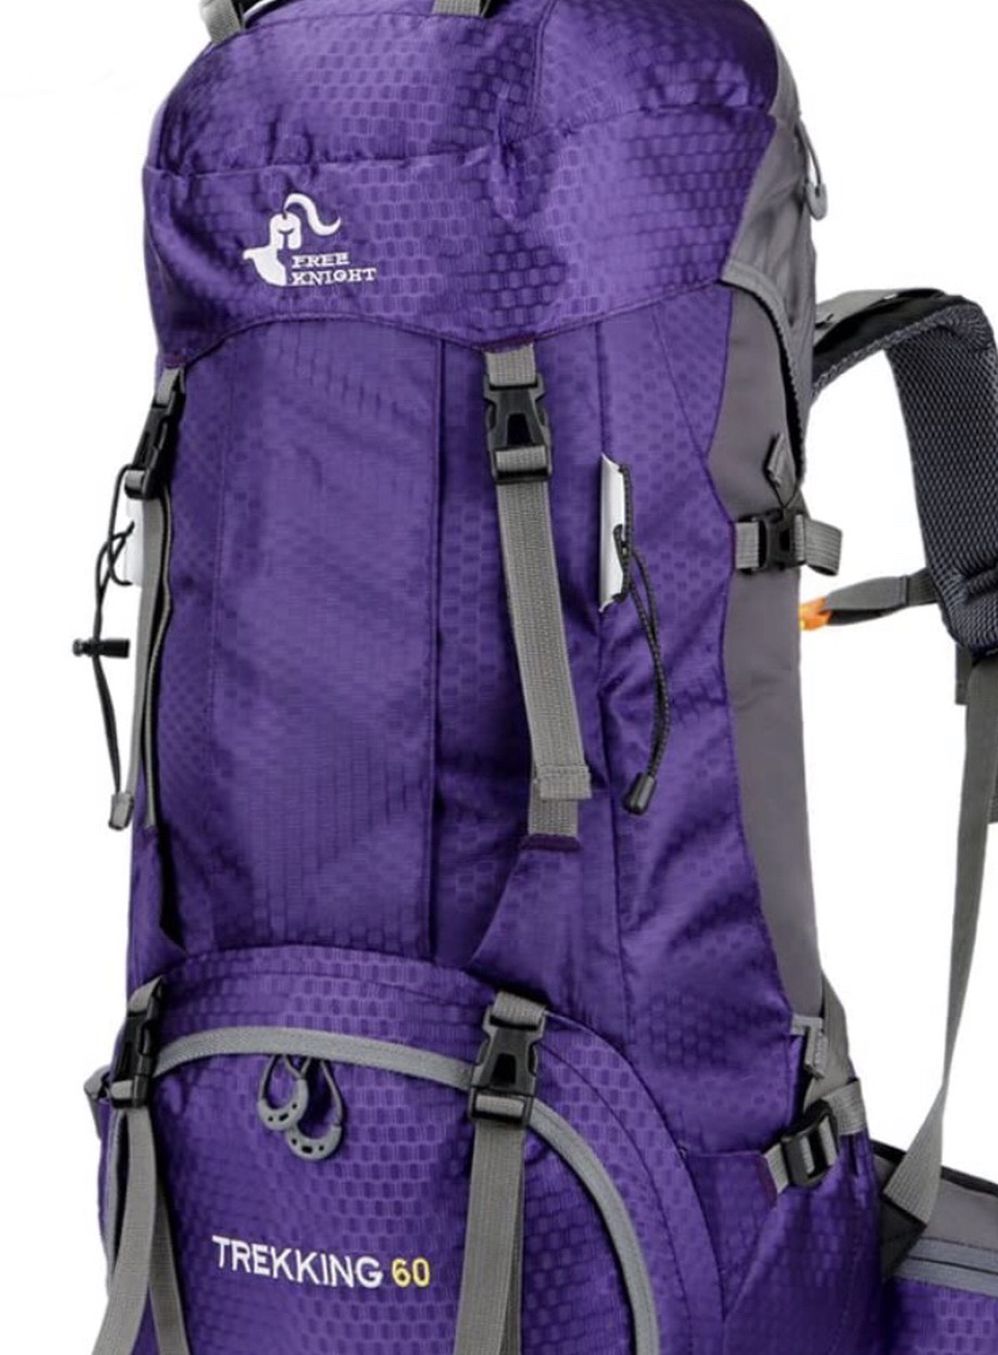 Waterproof Lightweight Hiking Backpack